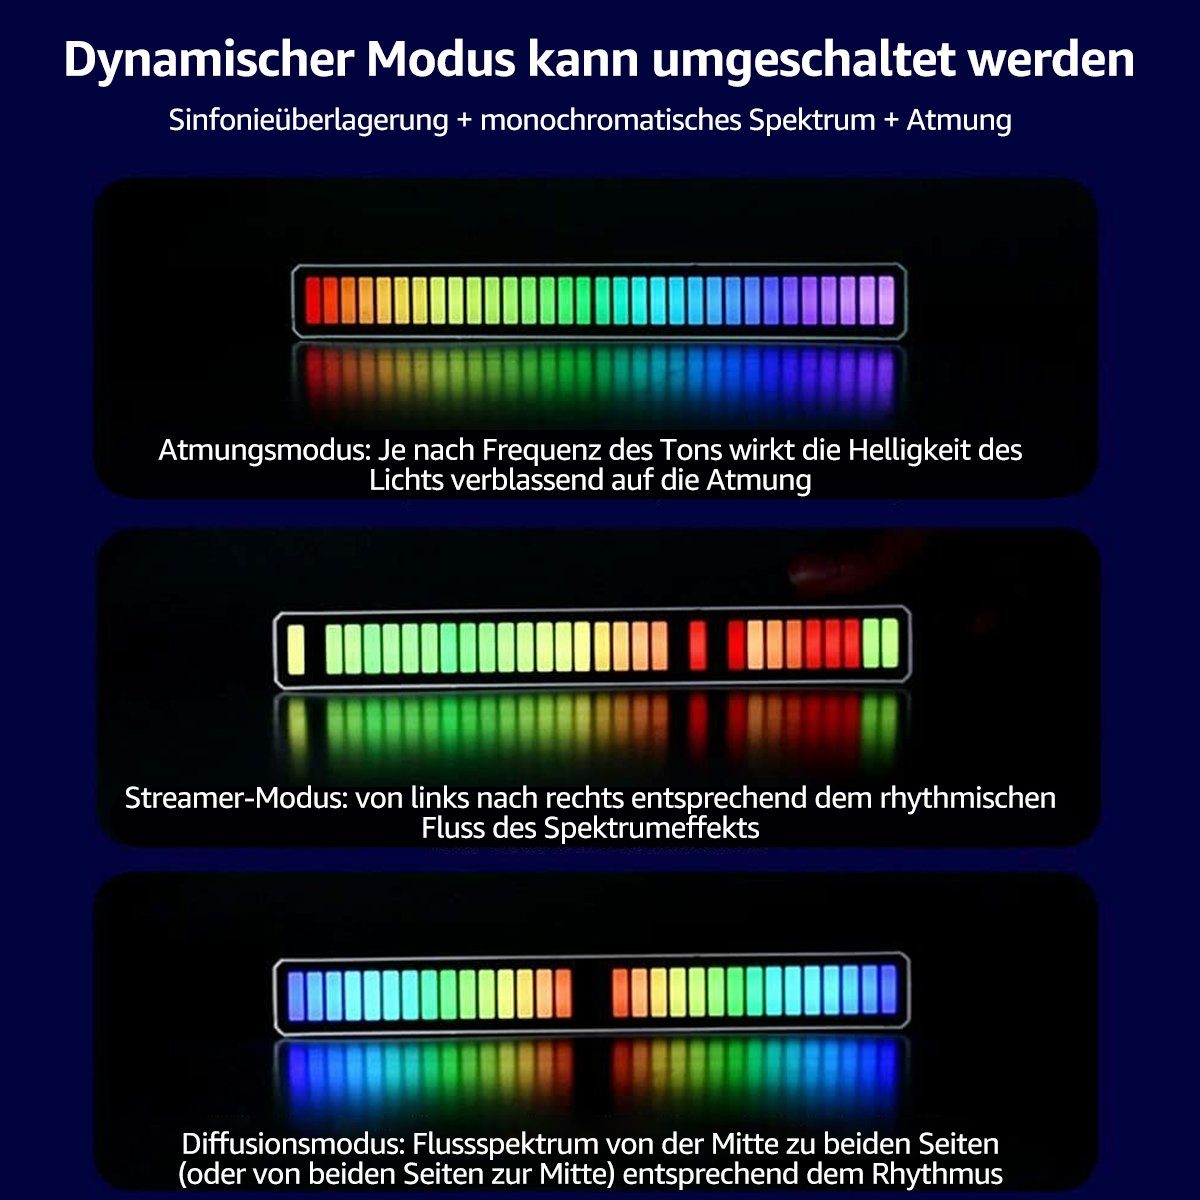 Bit Smarte Level Musik LED Anzeige Lampe Licht LED-Leuchte, 7Magic 32 RGB